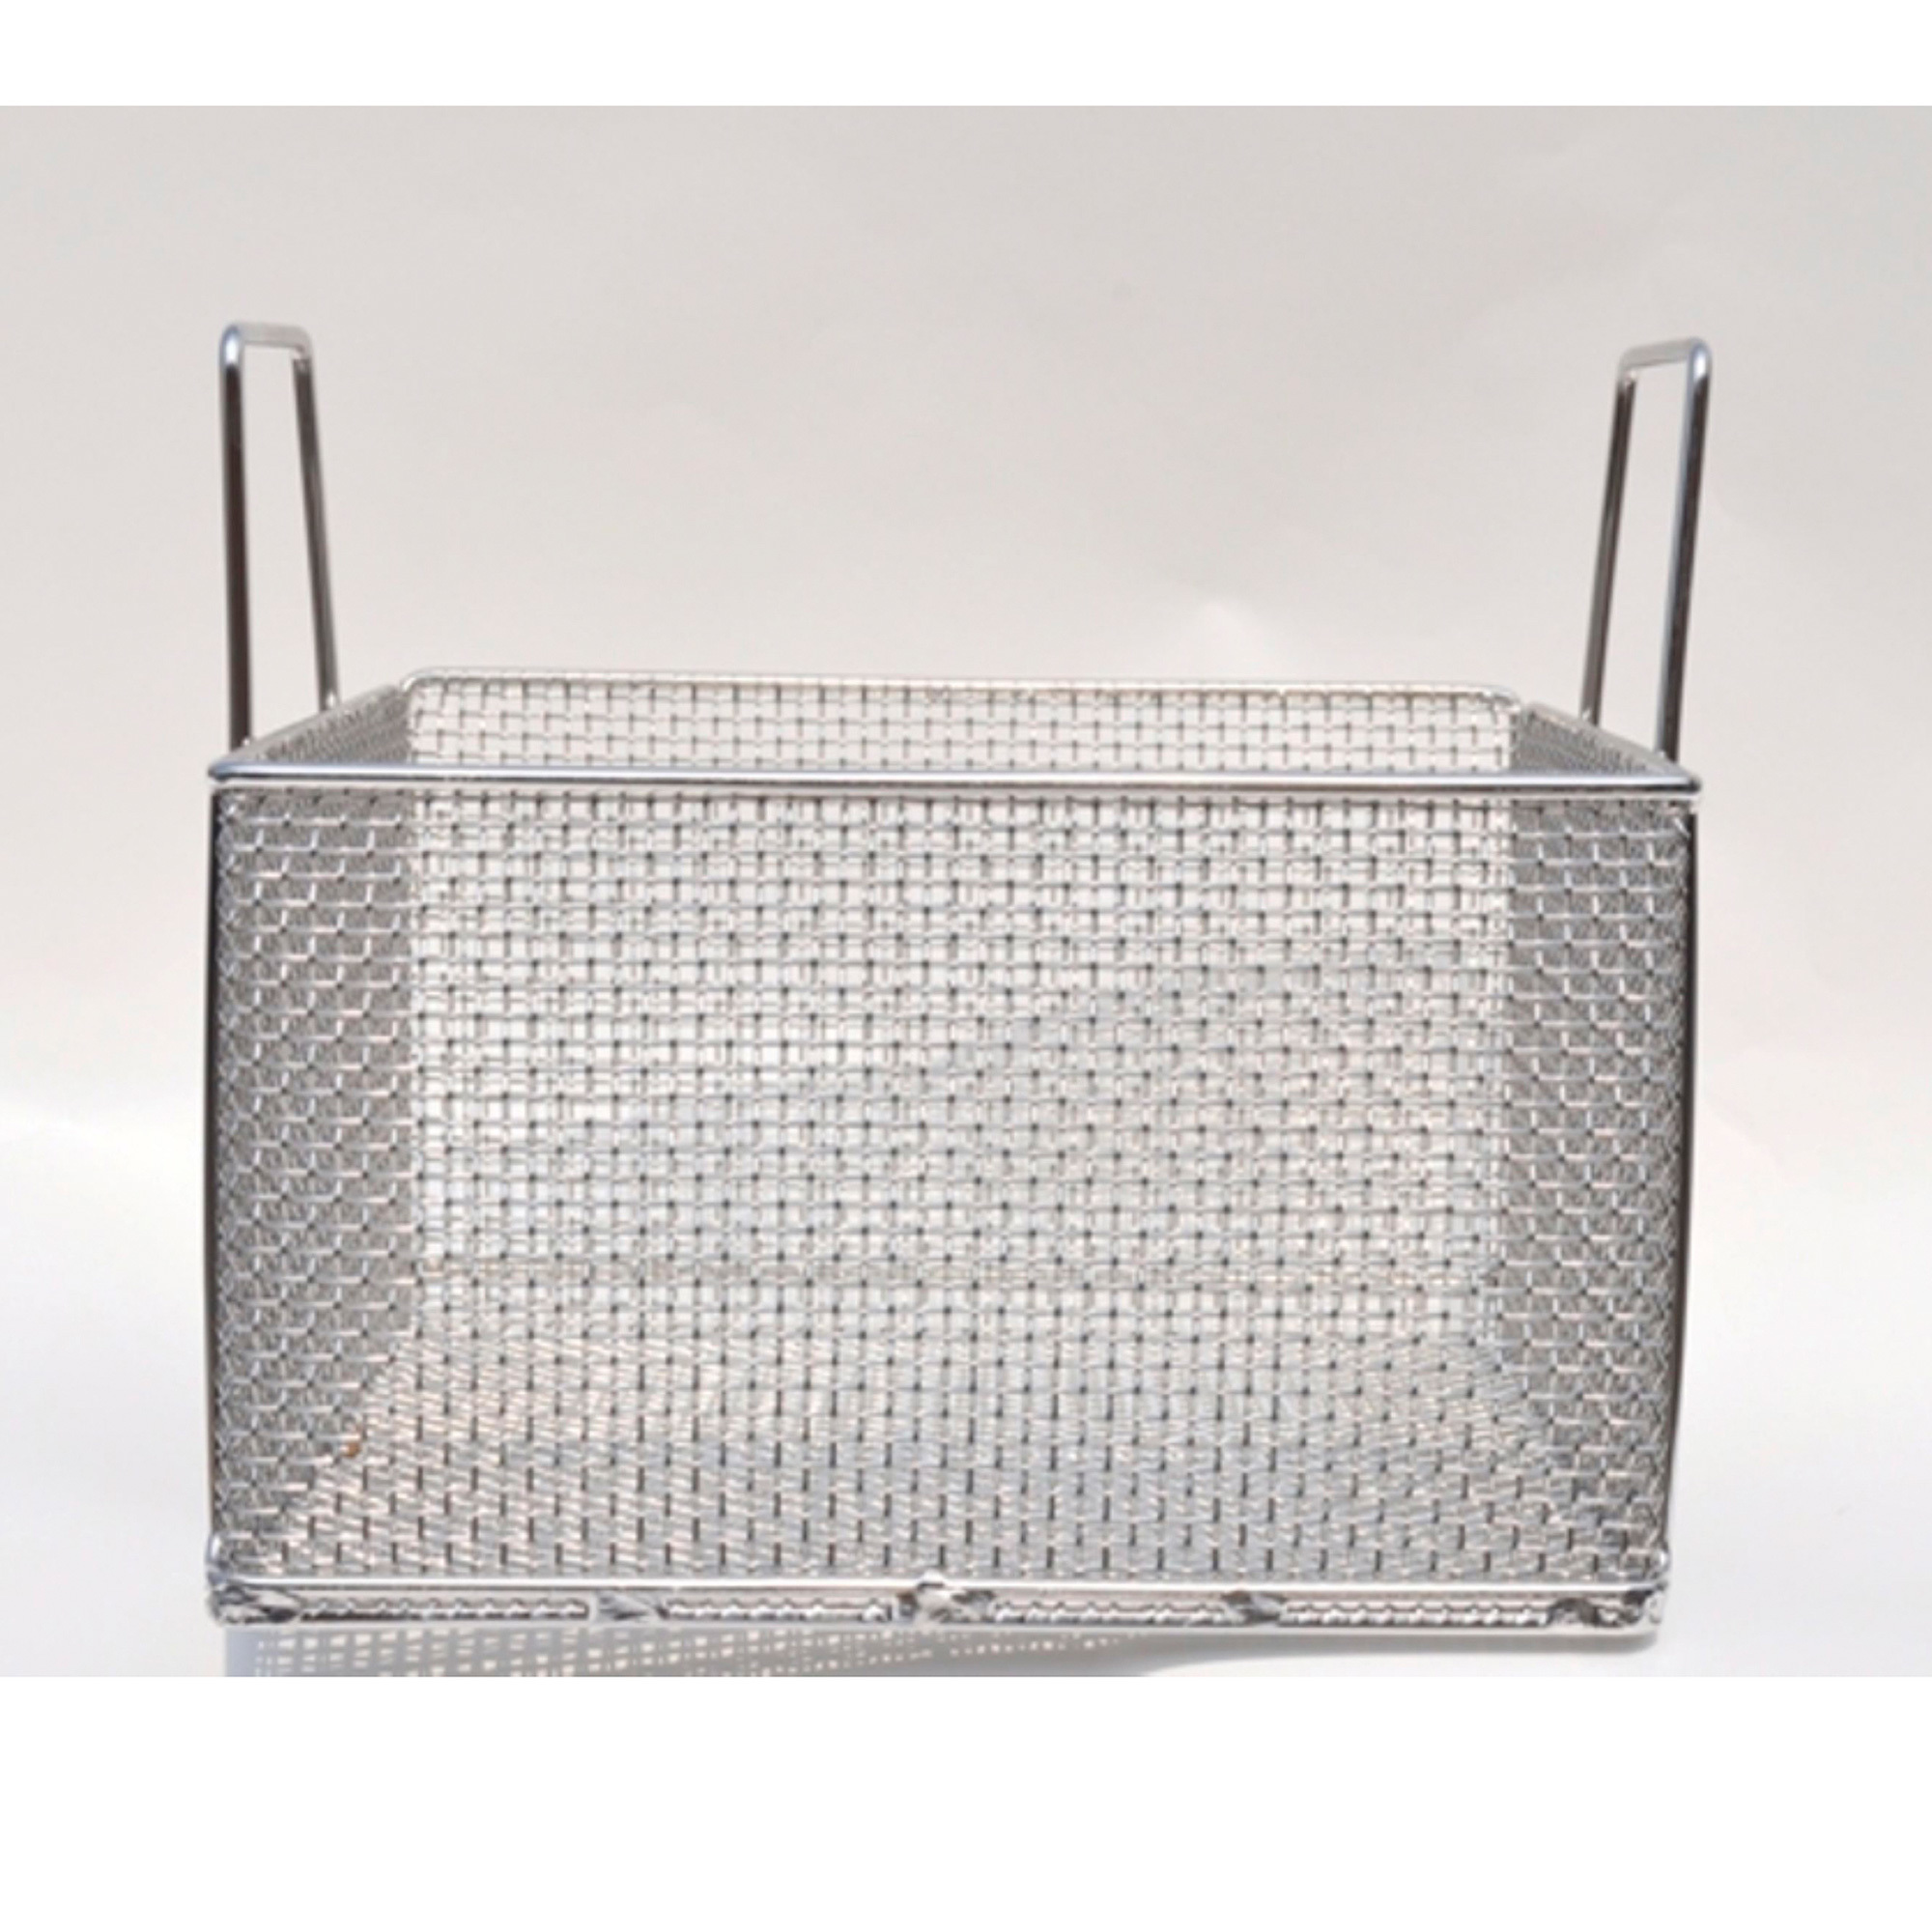 Mesh Basket: Rectangular, Stainless Steel